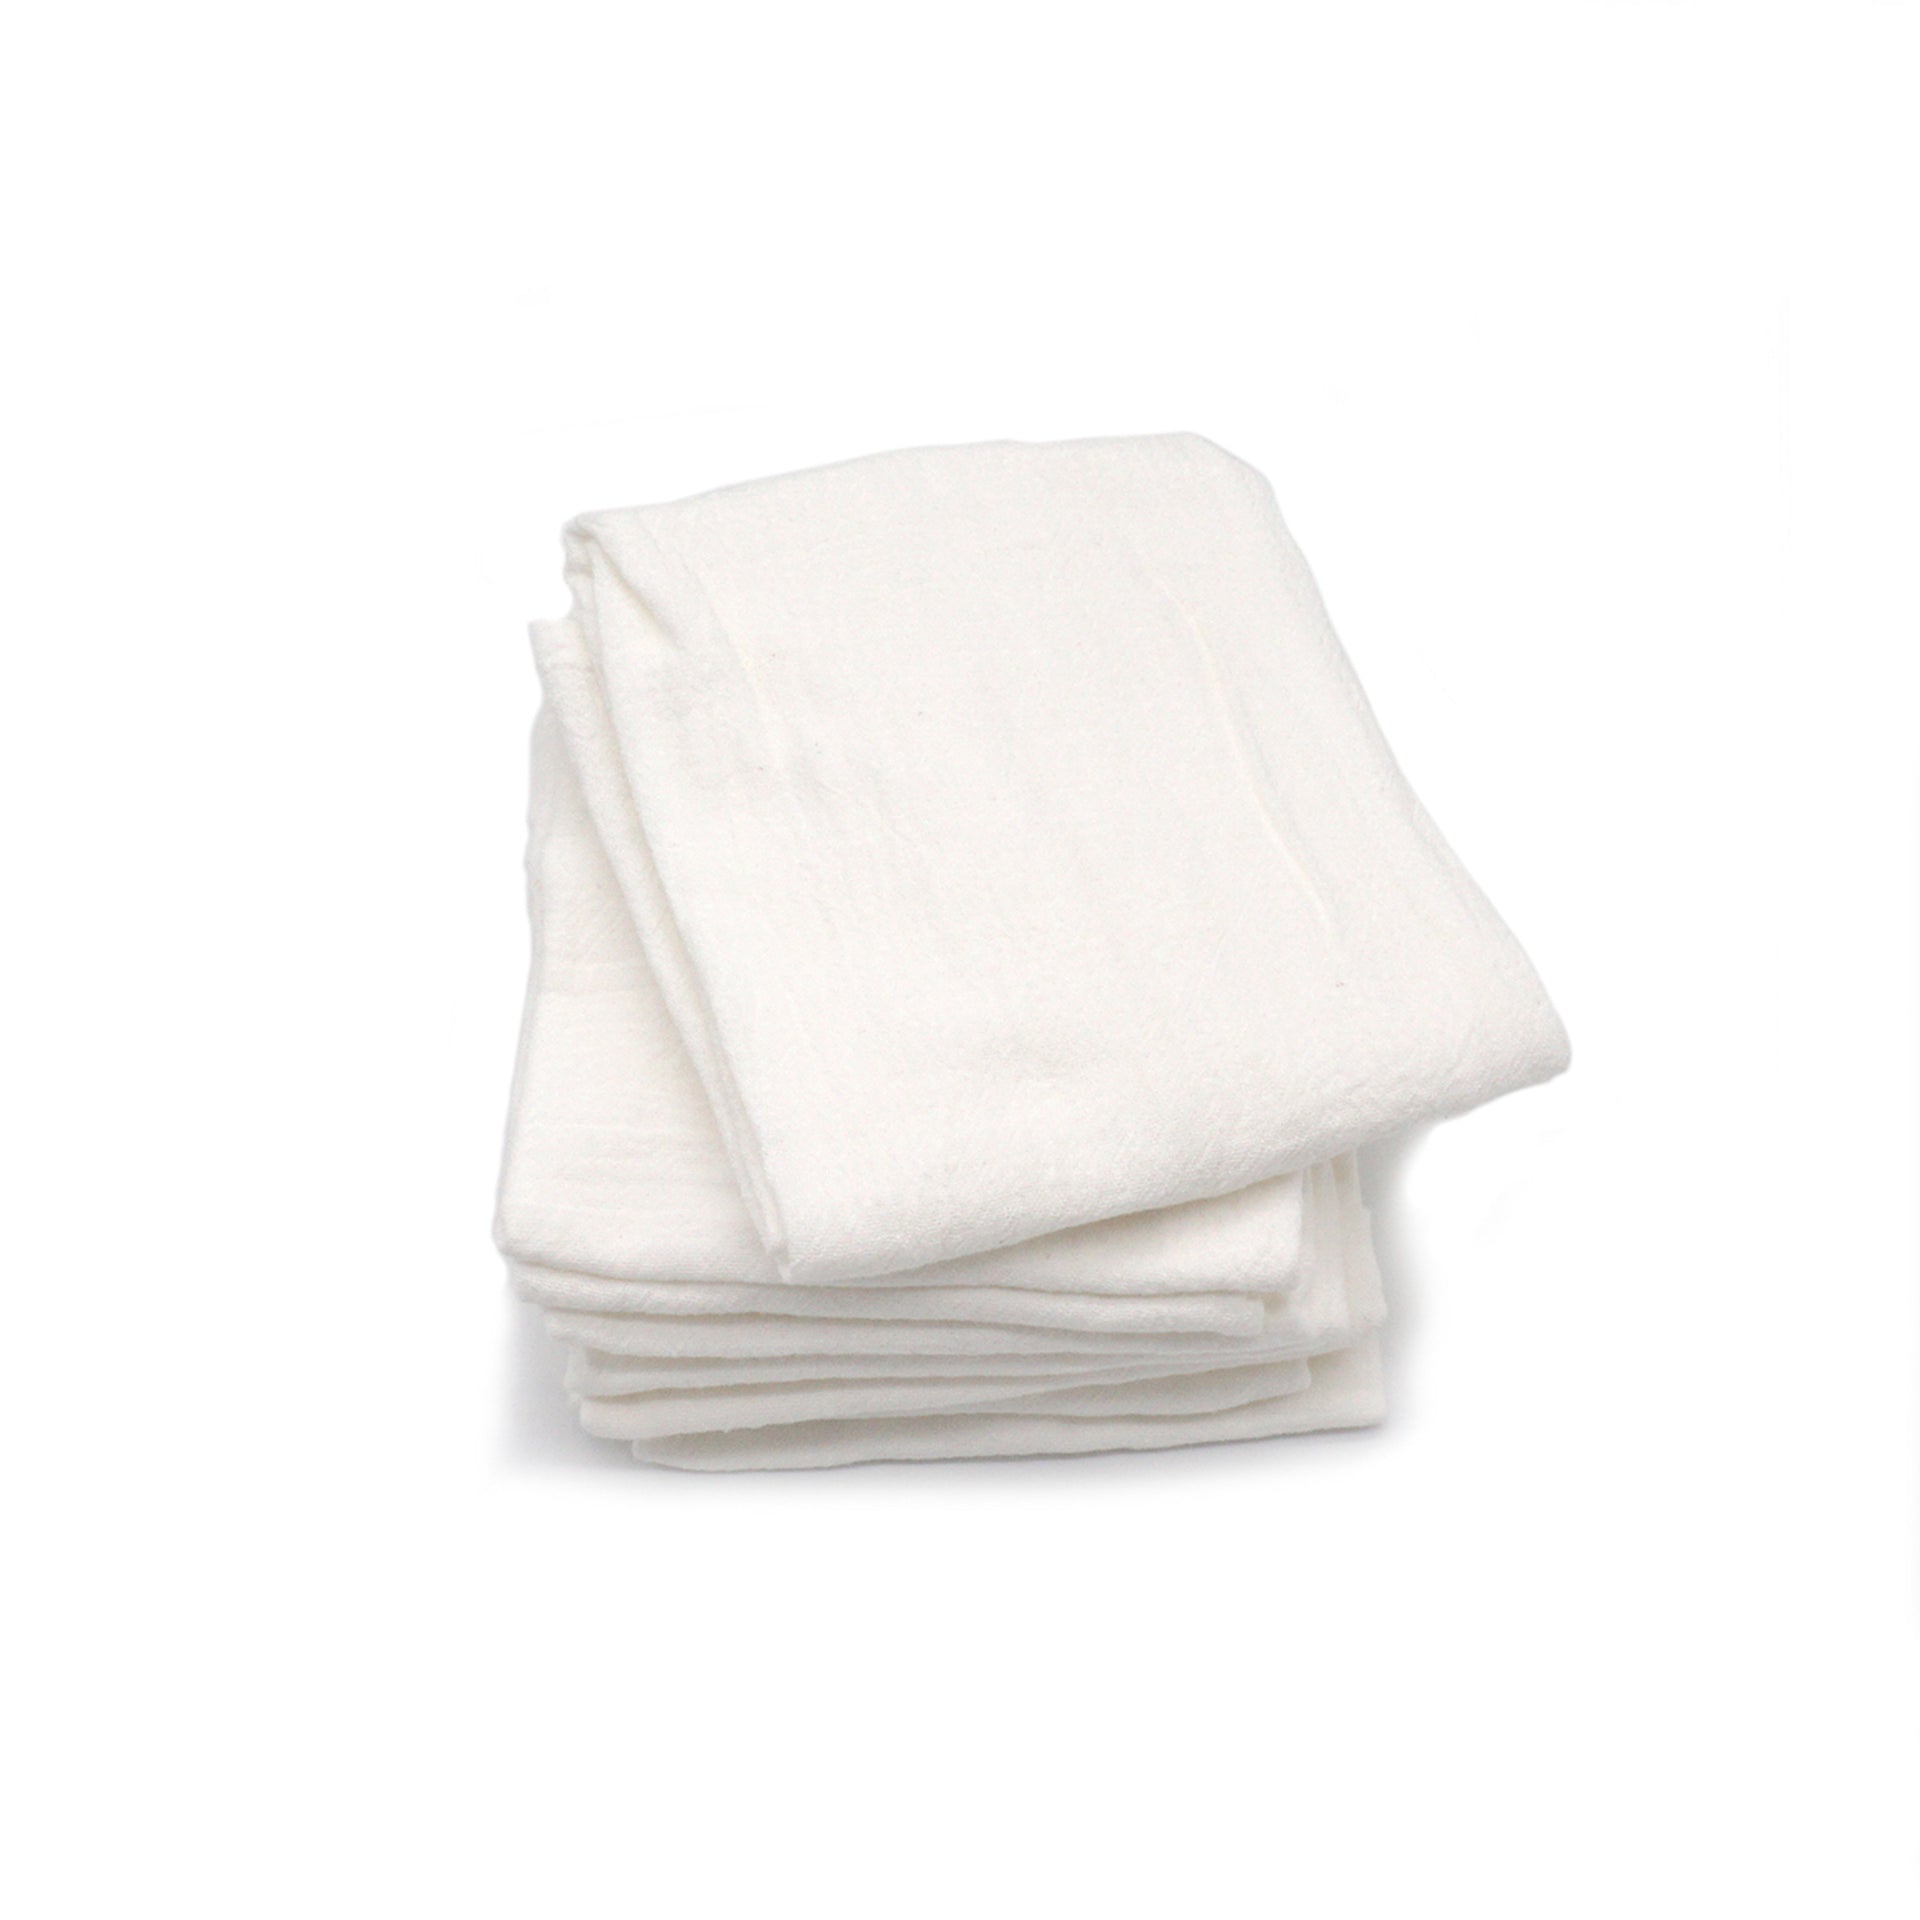 https://www.jkadams.com/cdn/shop/files/jk-adams-tagltd-flour-sack-dishtowels-white-set-of-five.jpg?v=1684770097&width=1920